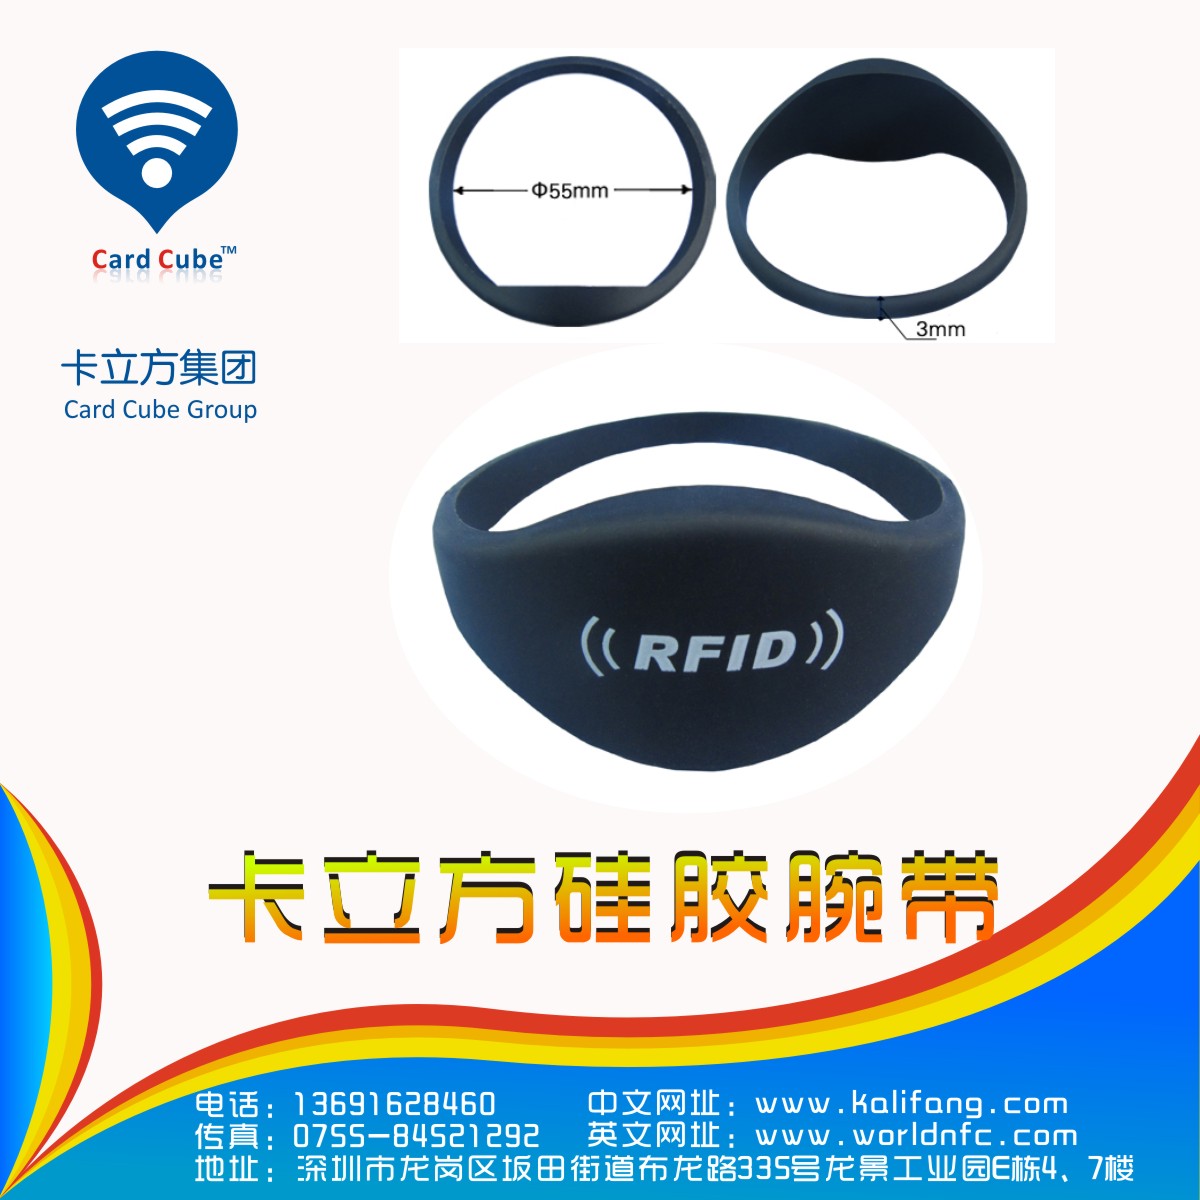 卡立方rfid腕带定位|硅胶RFID腕带|腕带厂家那里有?